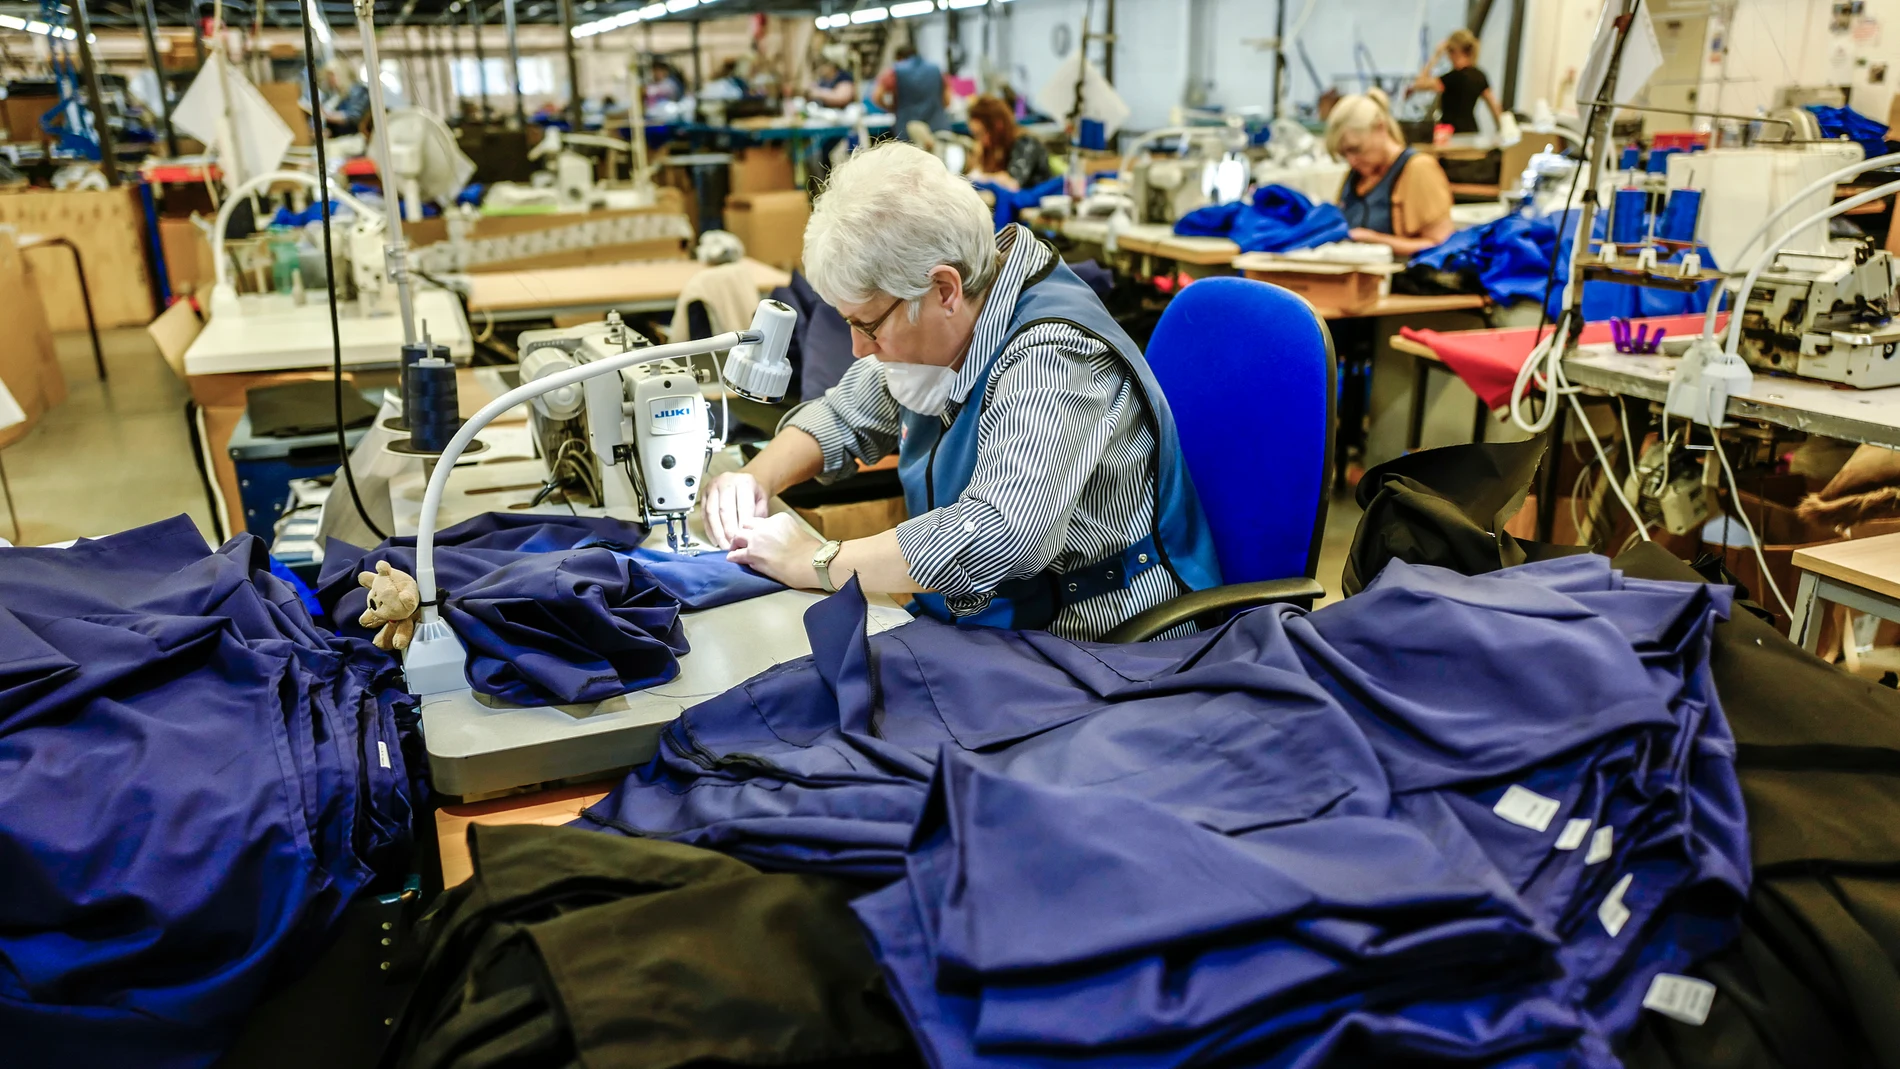 La pandemia 'resucita' la industria textil en España: "No damos a basto, hemos dicho que no a muchos clientes" 